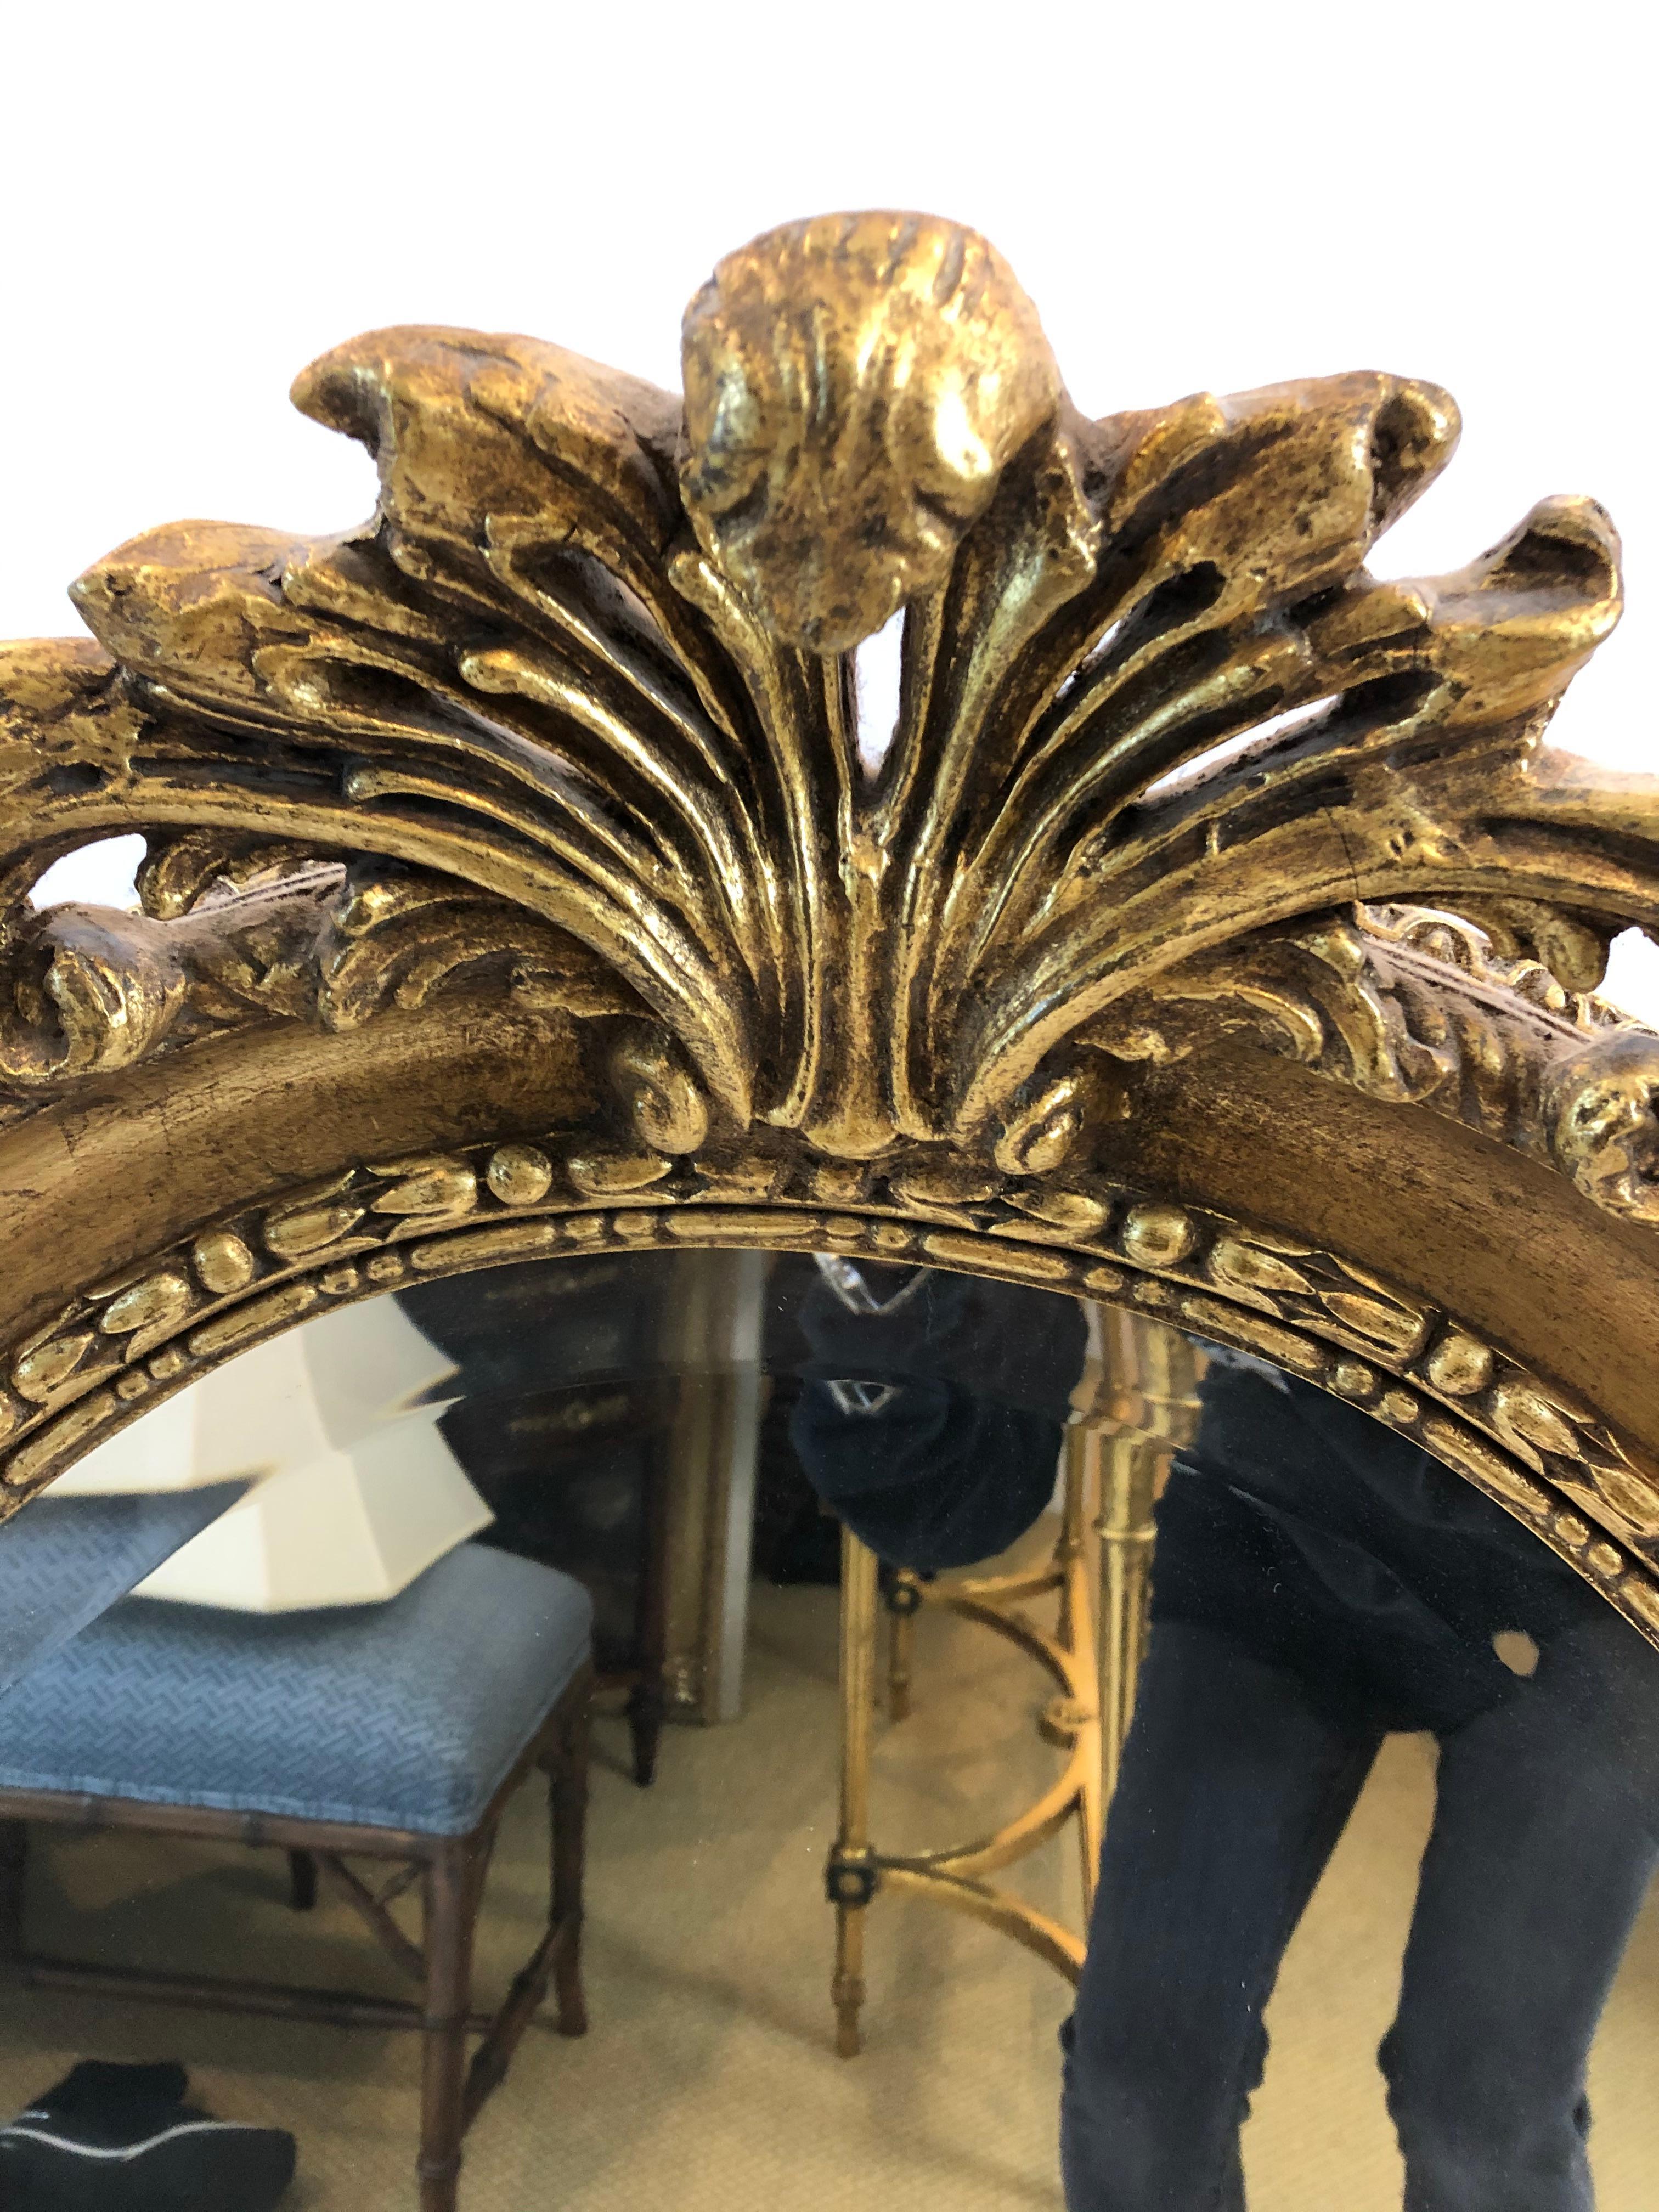 Klassischer ovaler Spiegel im französischen Stil mit geschnitztem Rahmen aus vergoldetem Holz und originellem Muschel- und Laubdekor auf der Oberseite.